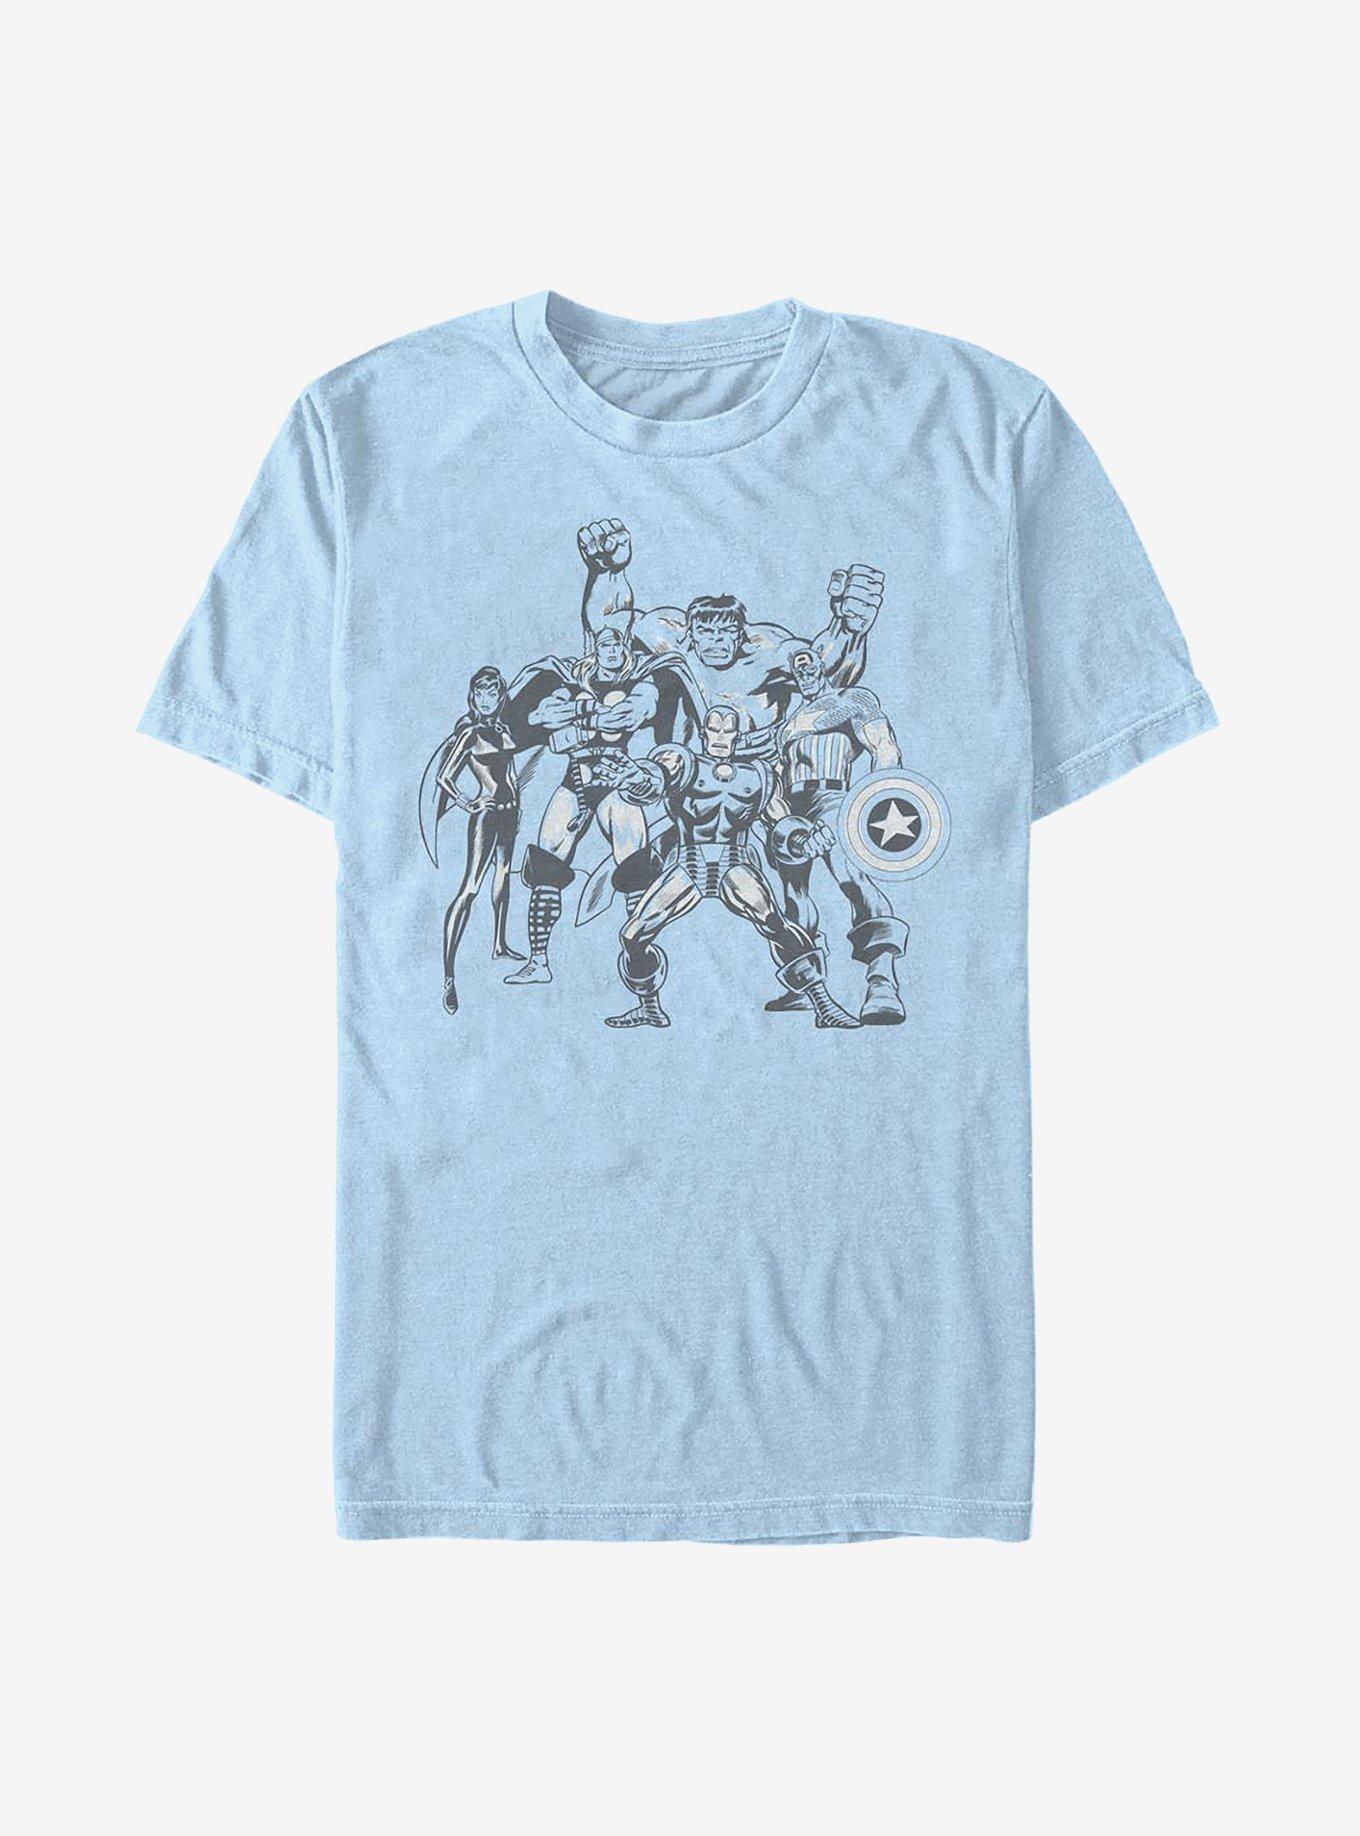 Marvel Avengers Retro Group T-Shirt